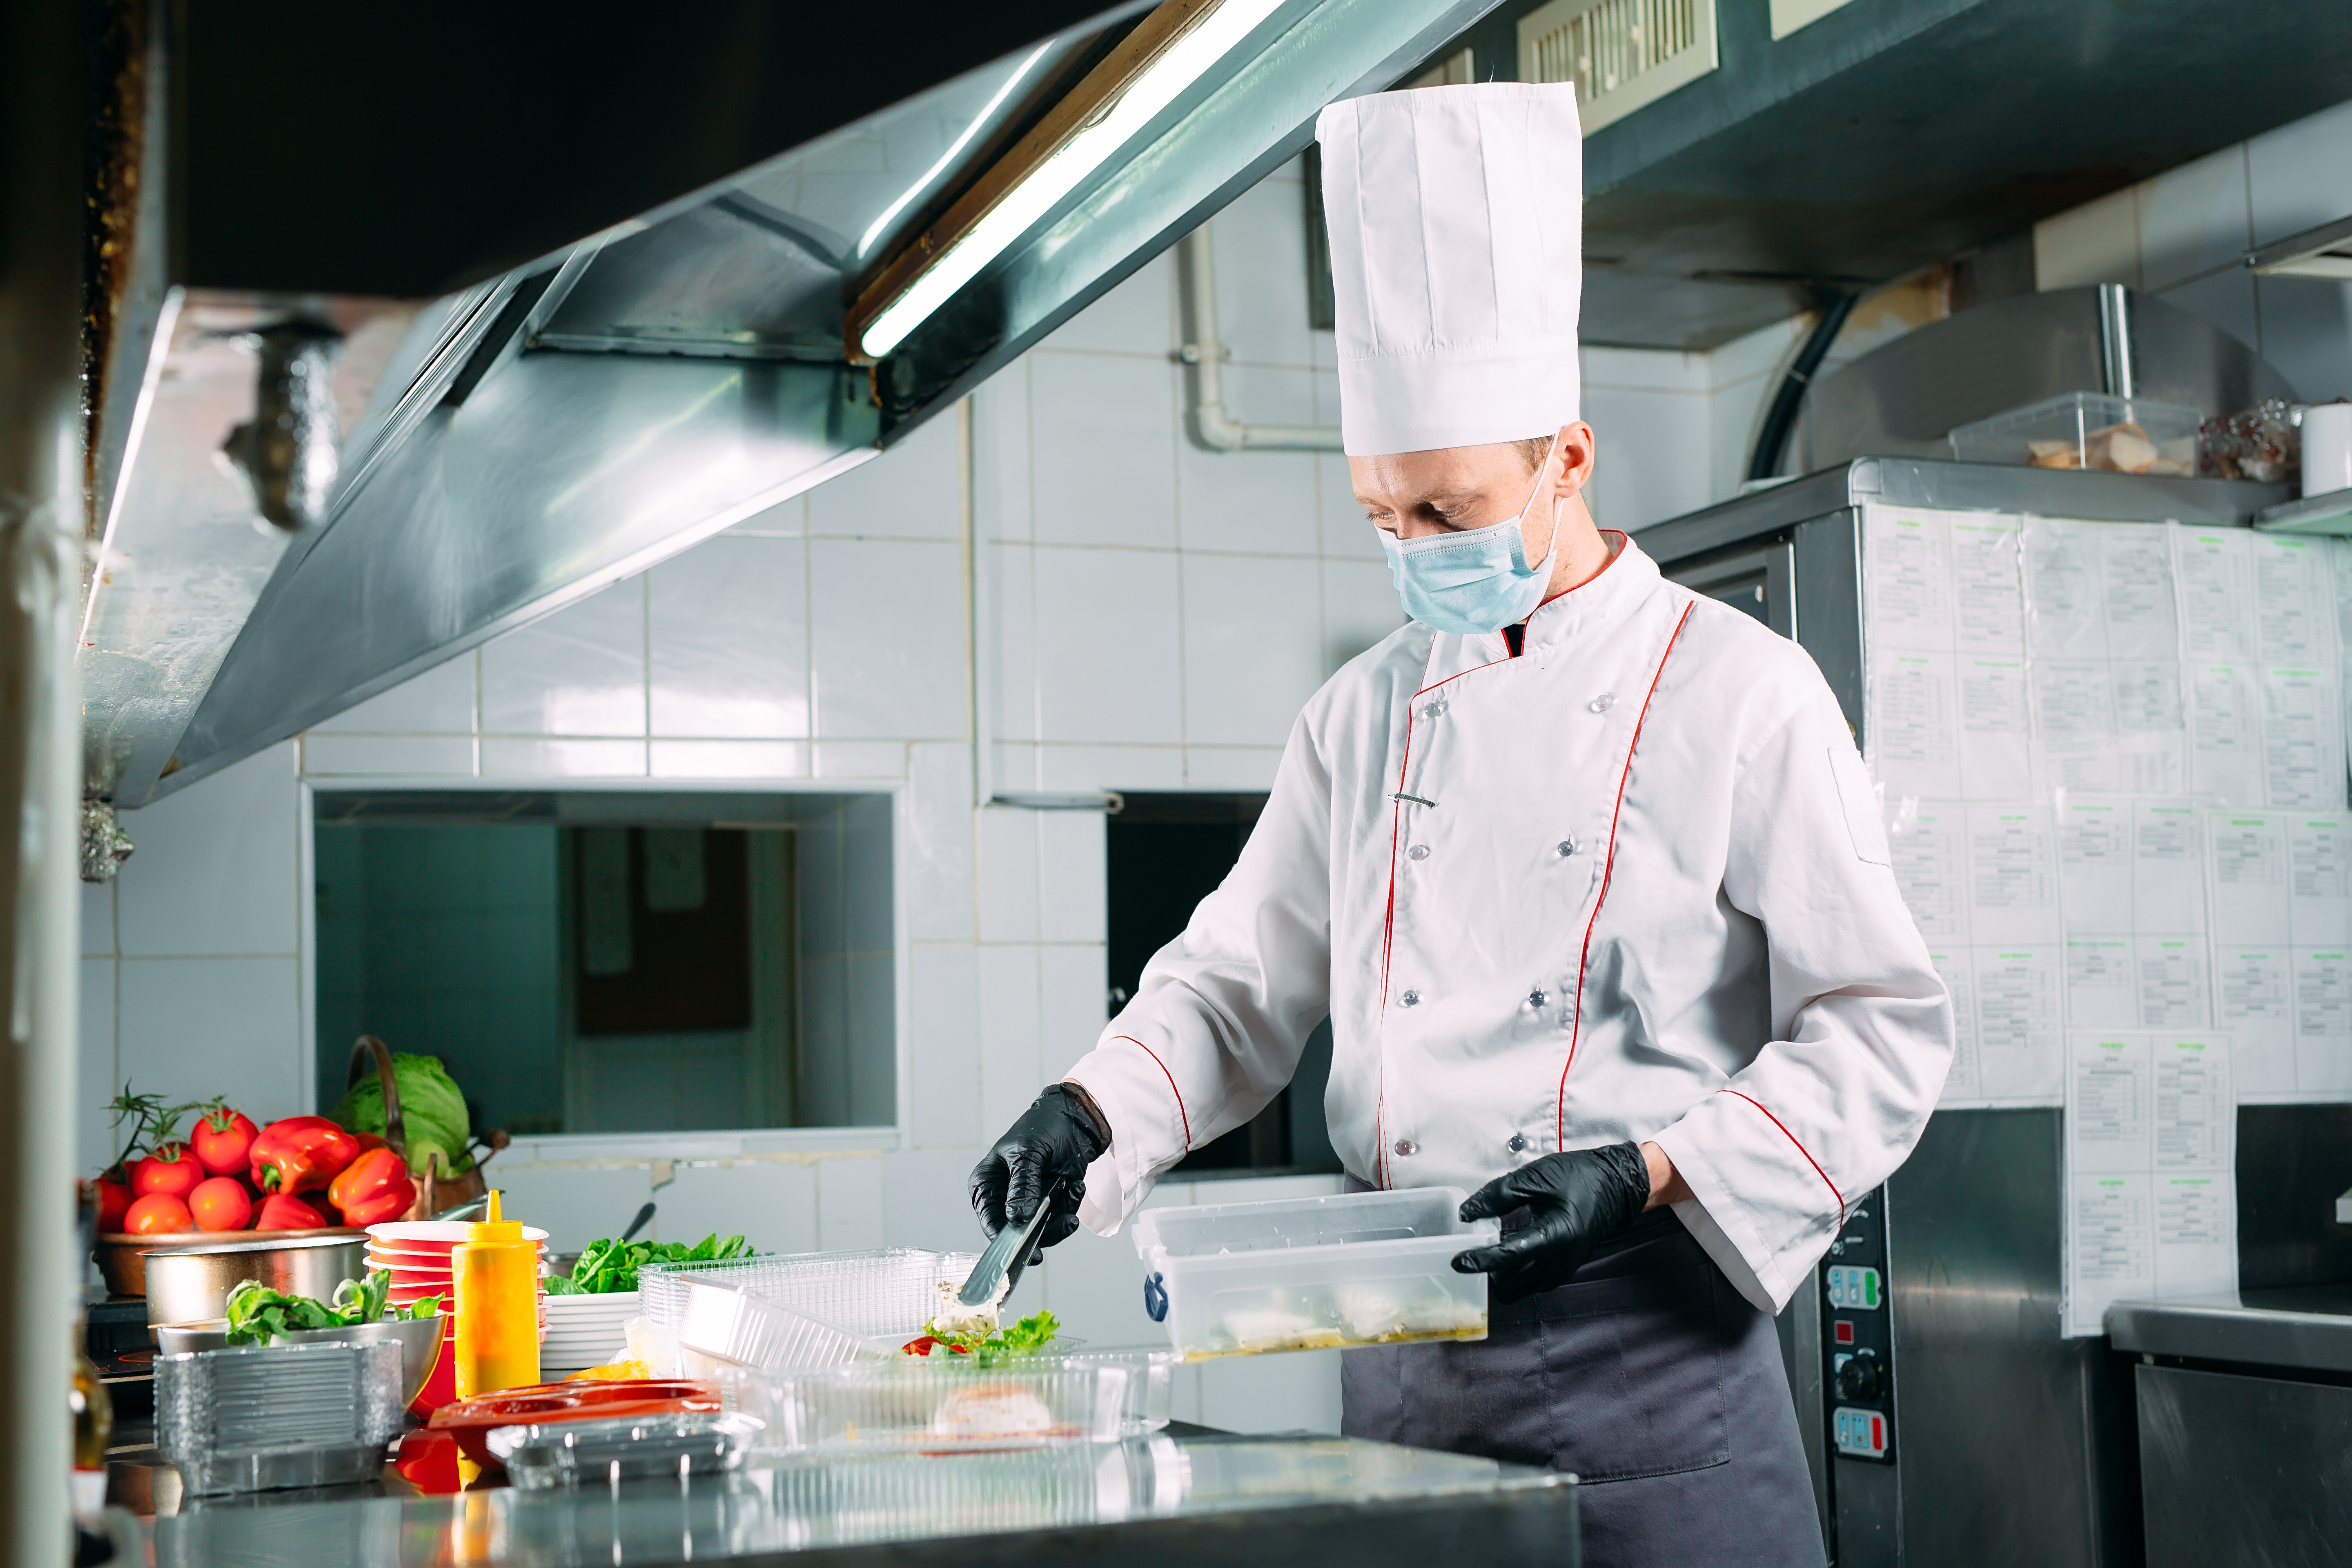 A chef working in a restaurant kitchen | Source: Shutterstock